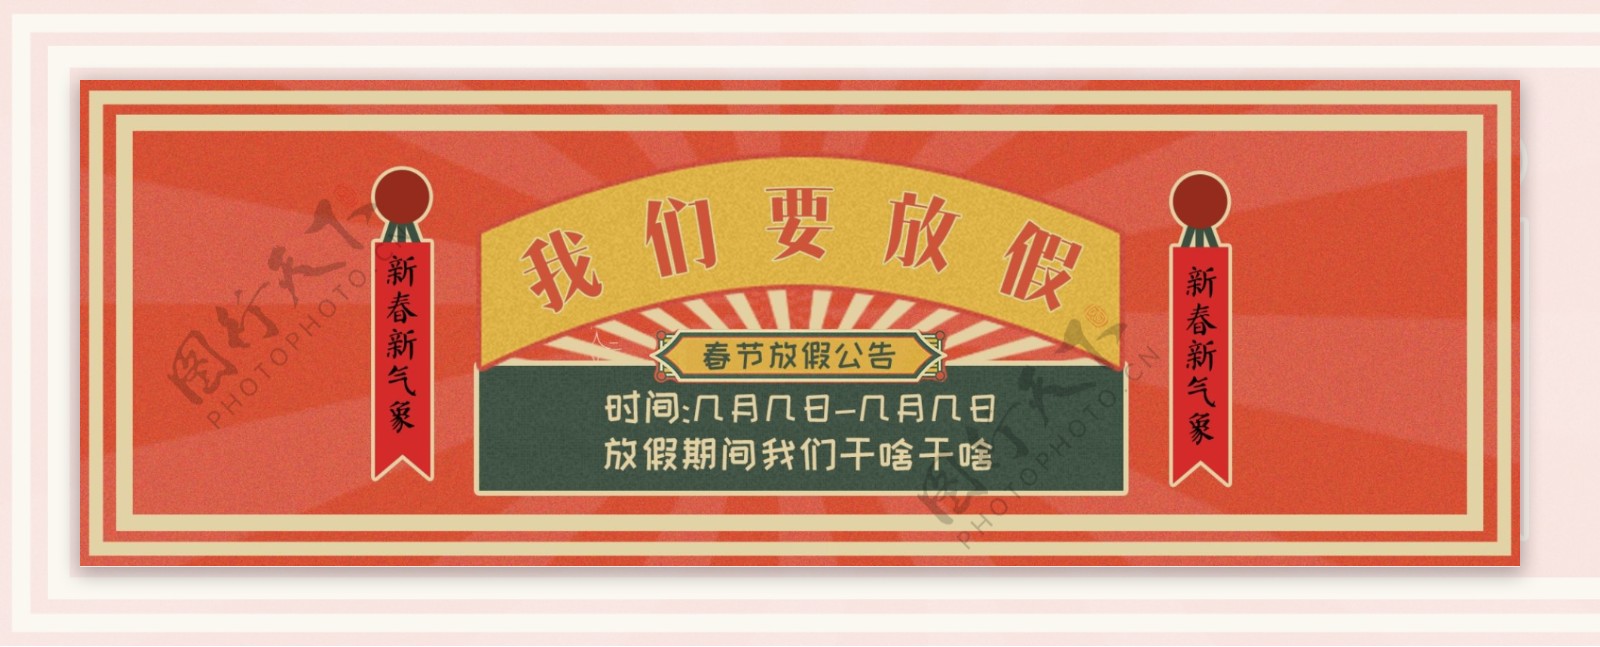 春节放假公告复古红色banner海报